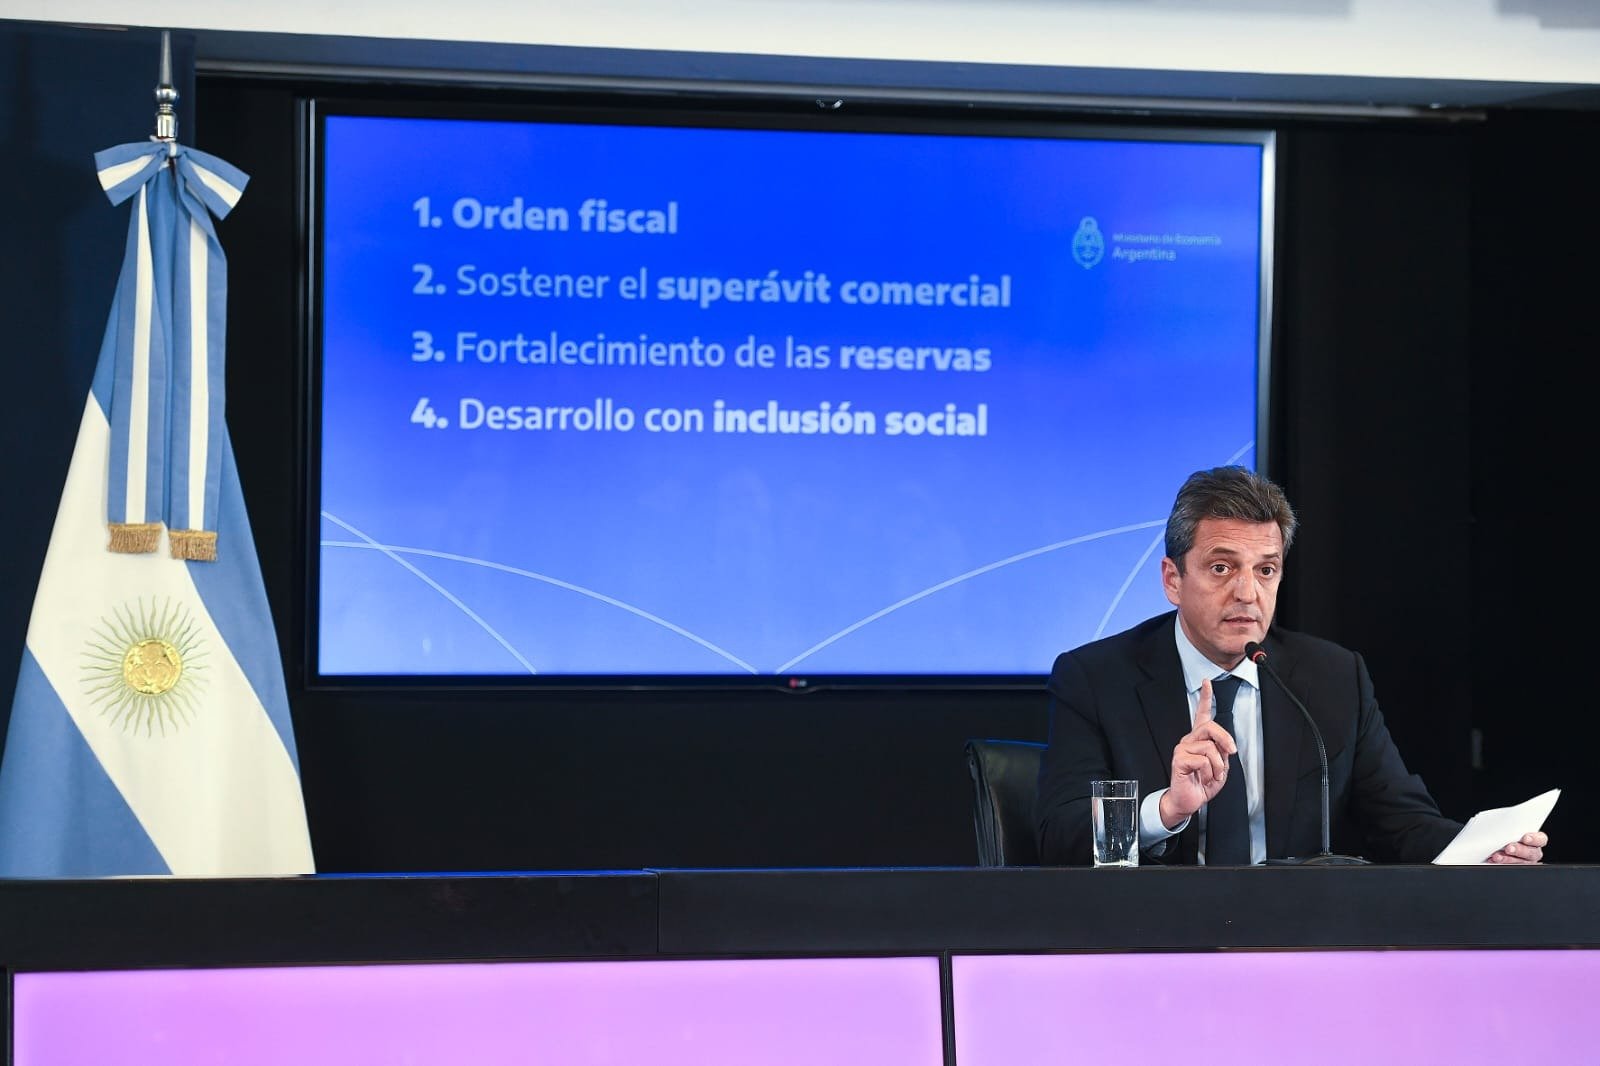 Martín Epstein: «Lo que plantea el Ministro para el fortalecimiento de reservas suena razonable»